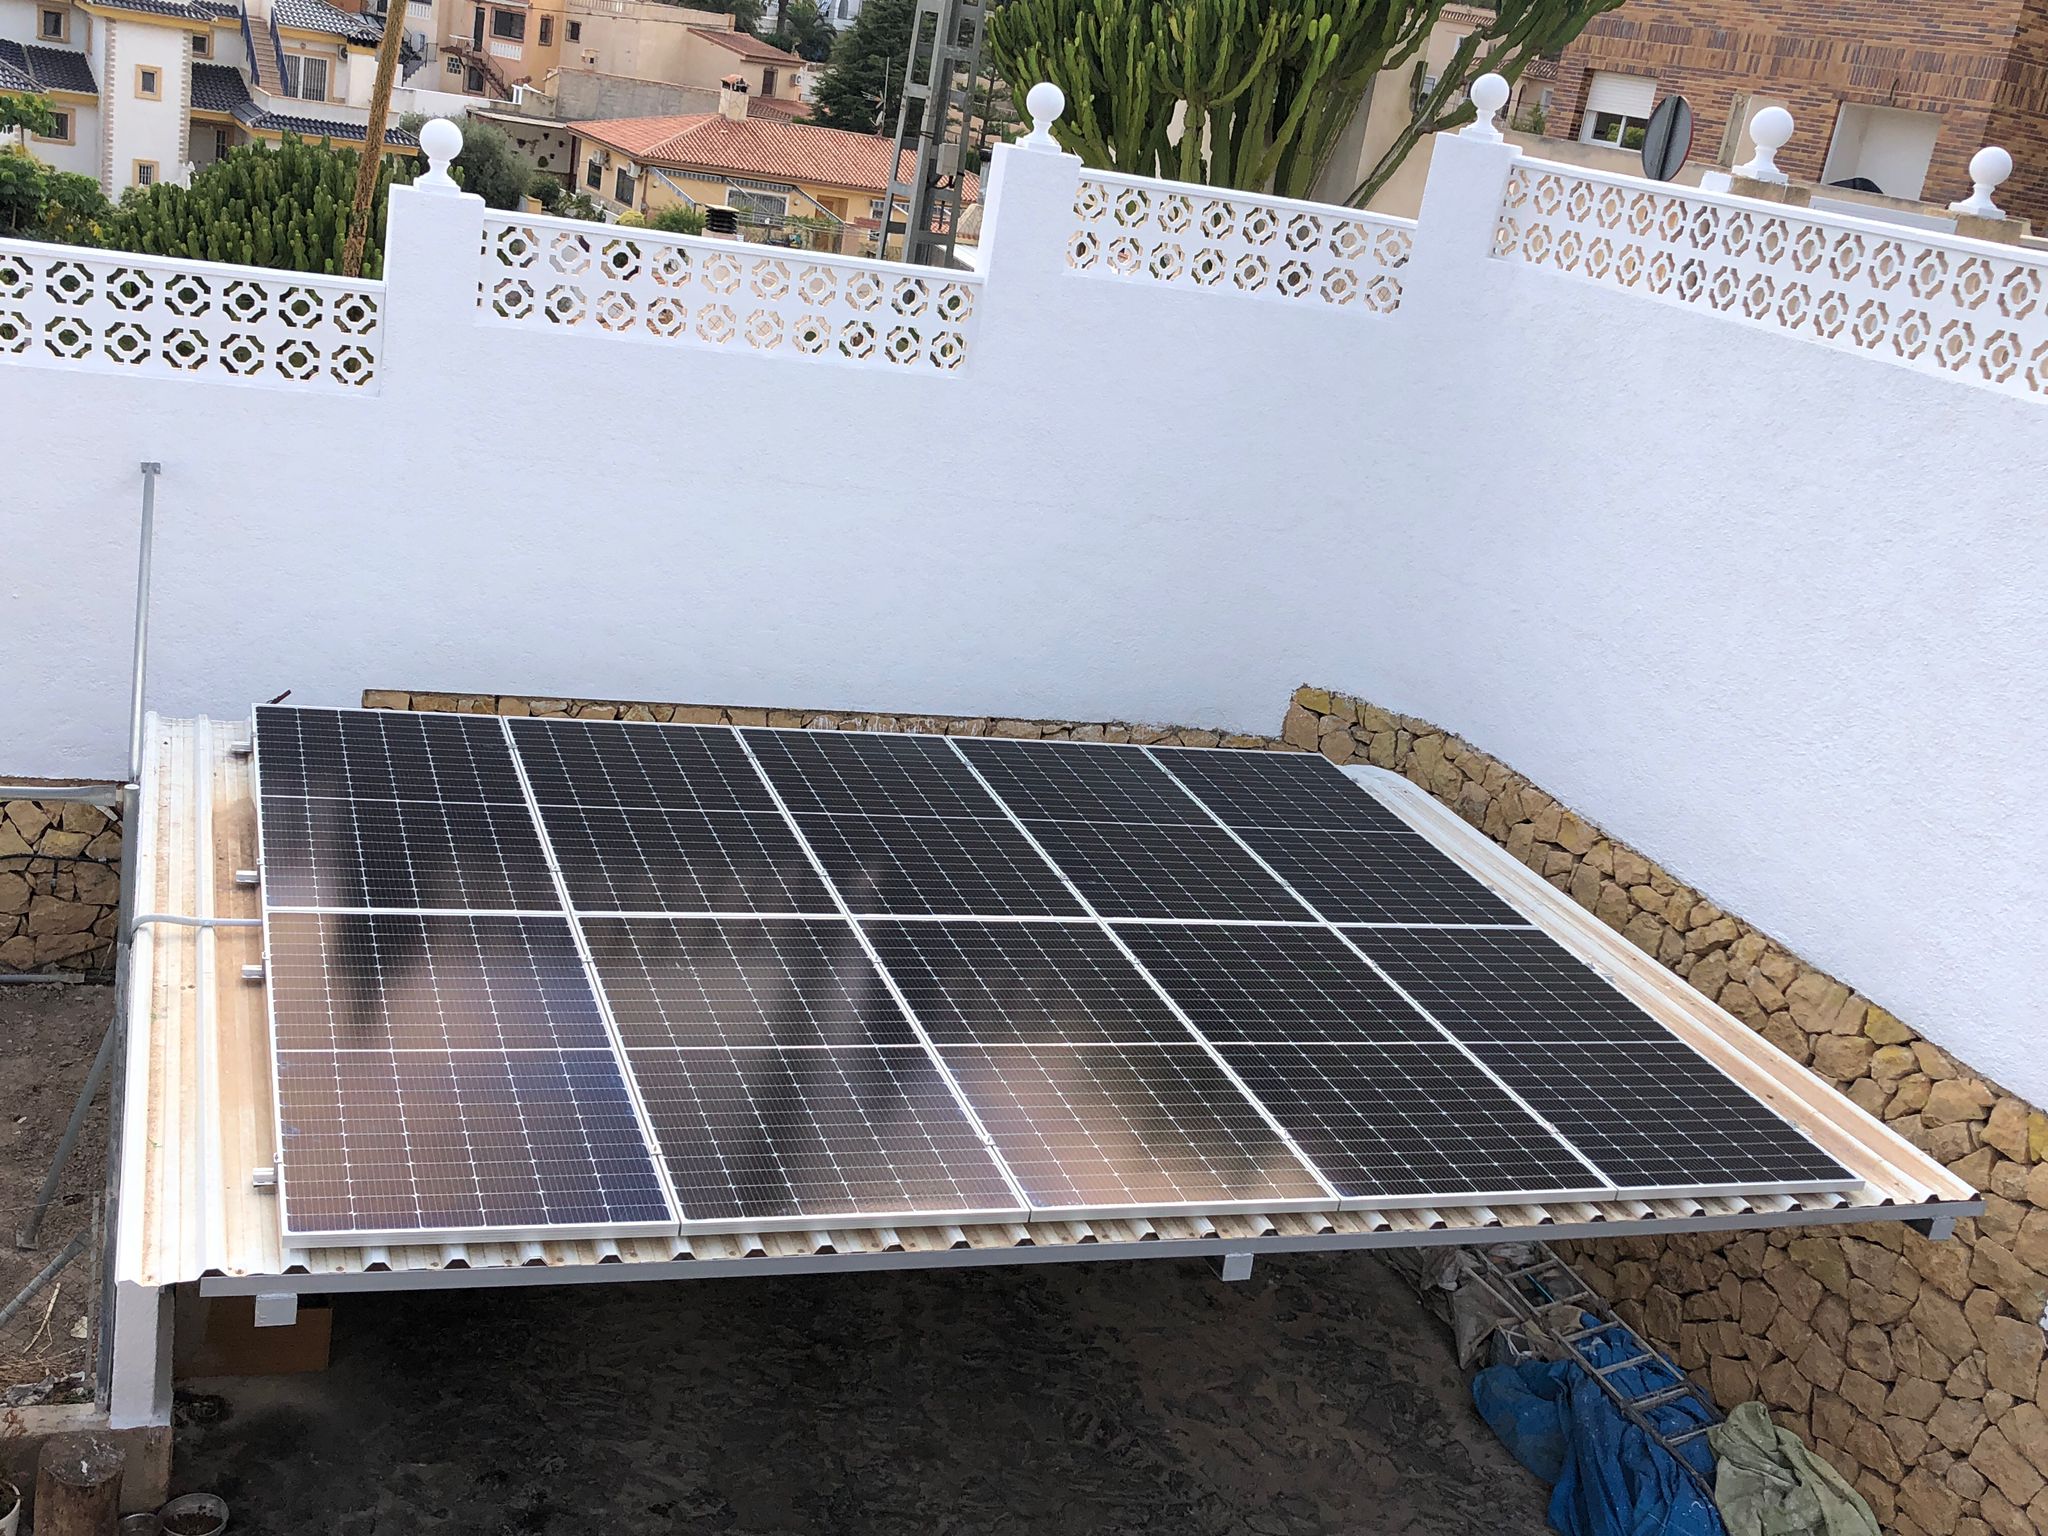 10X 455 wp Paneles Solares, Alfas del Pi, Alicante (Sistema híbrido)